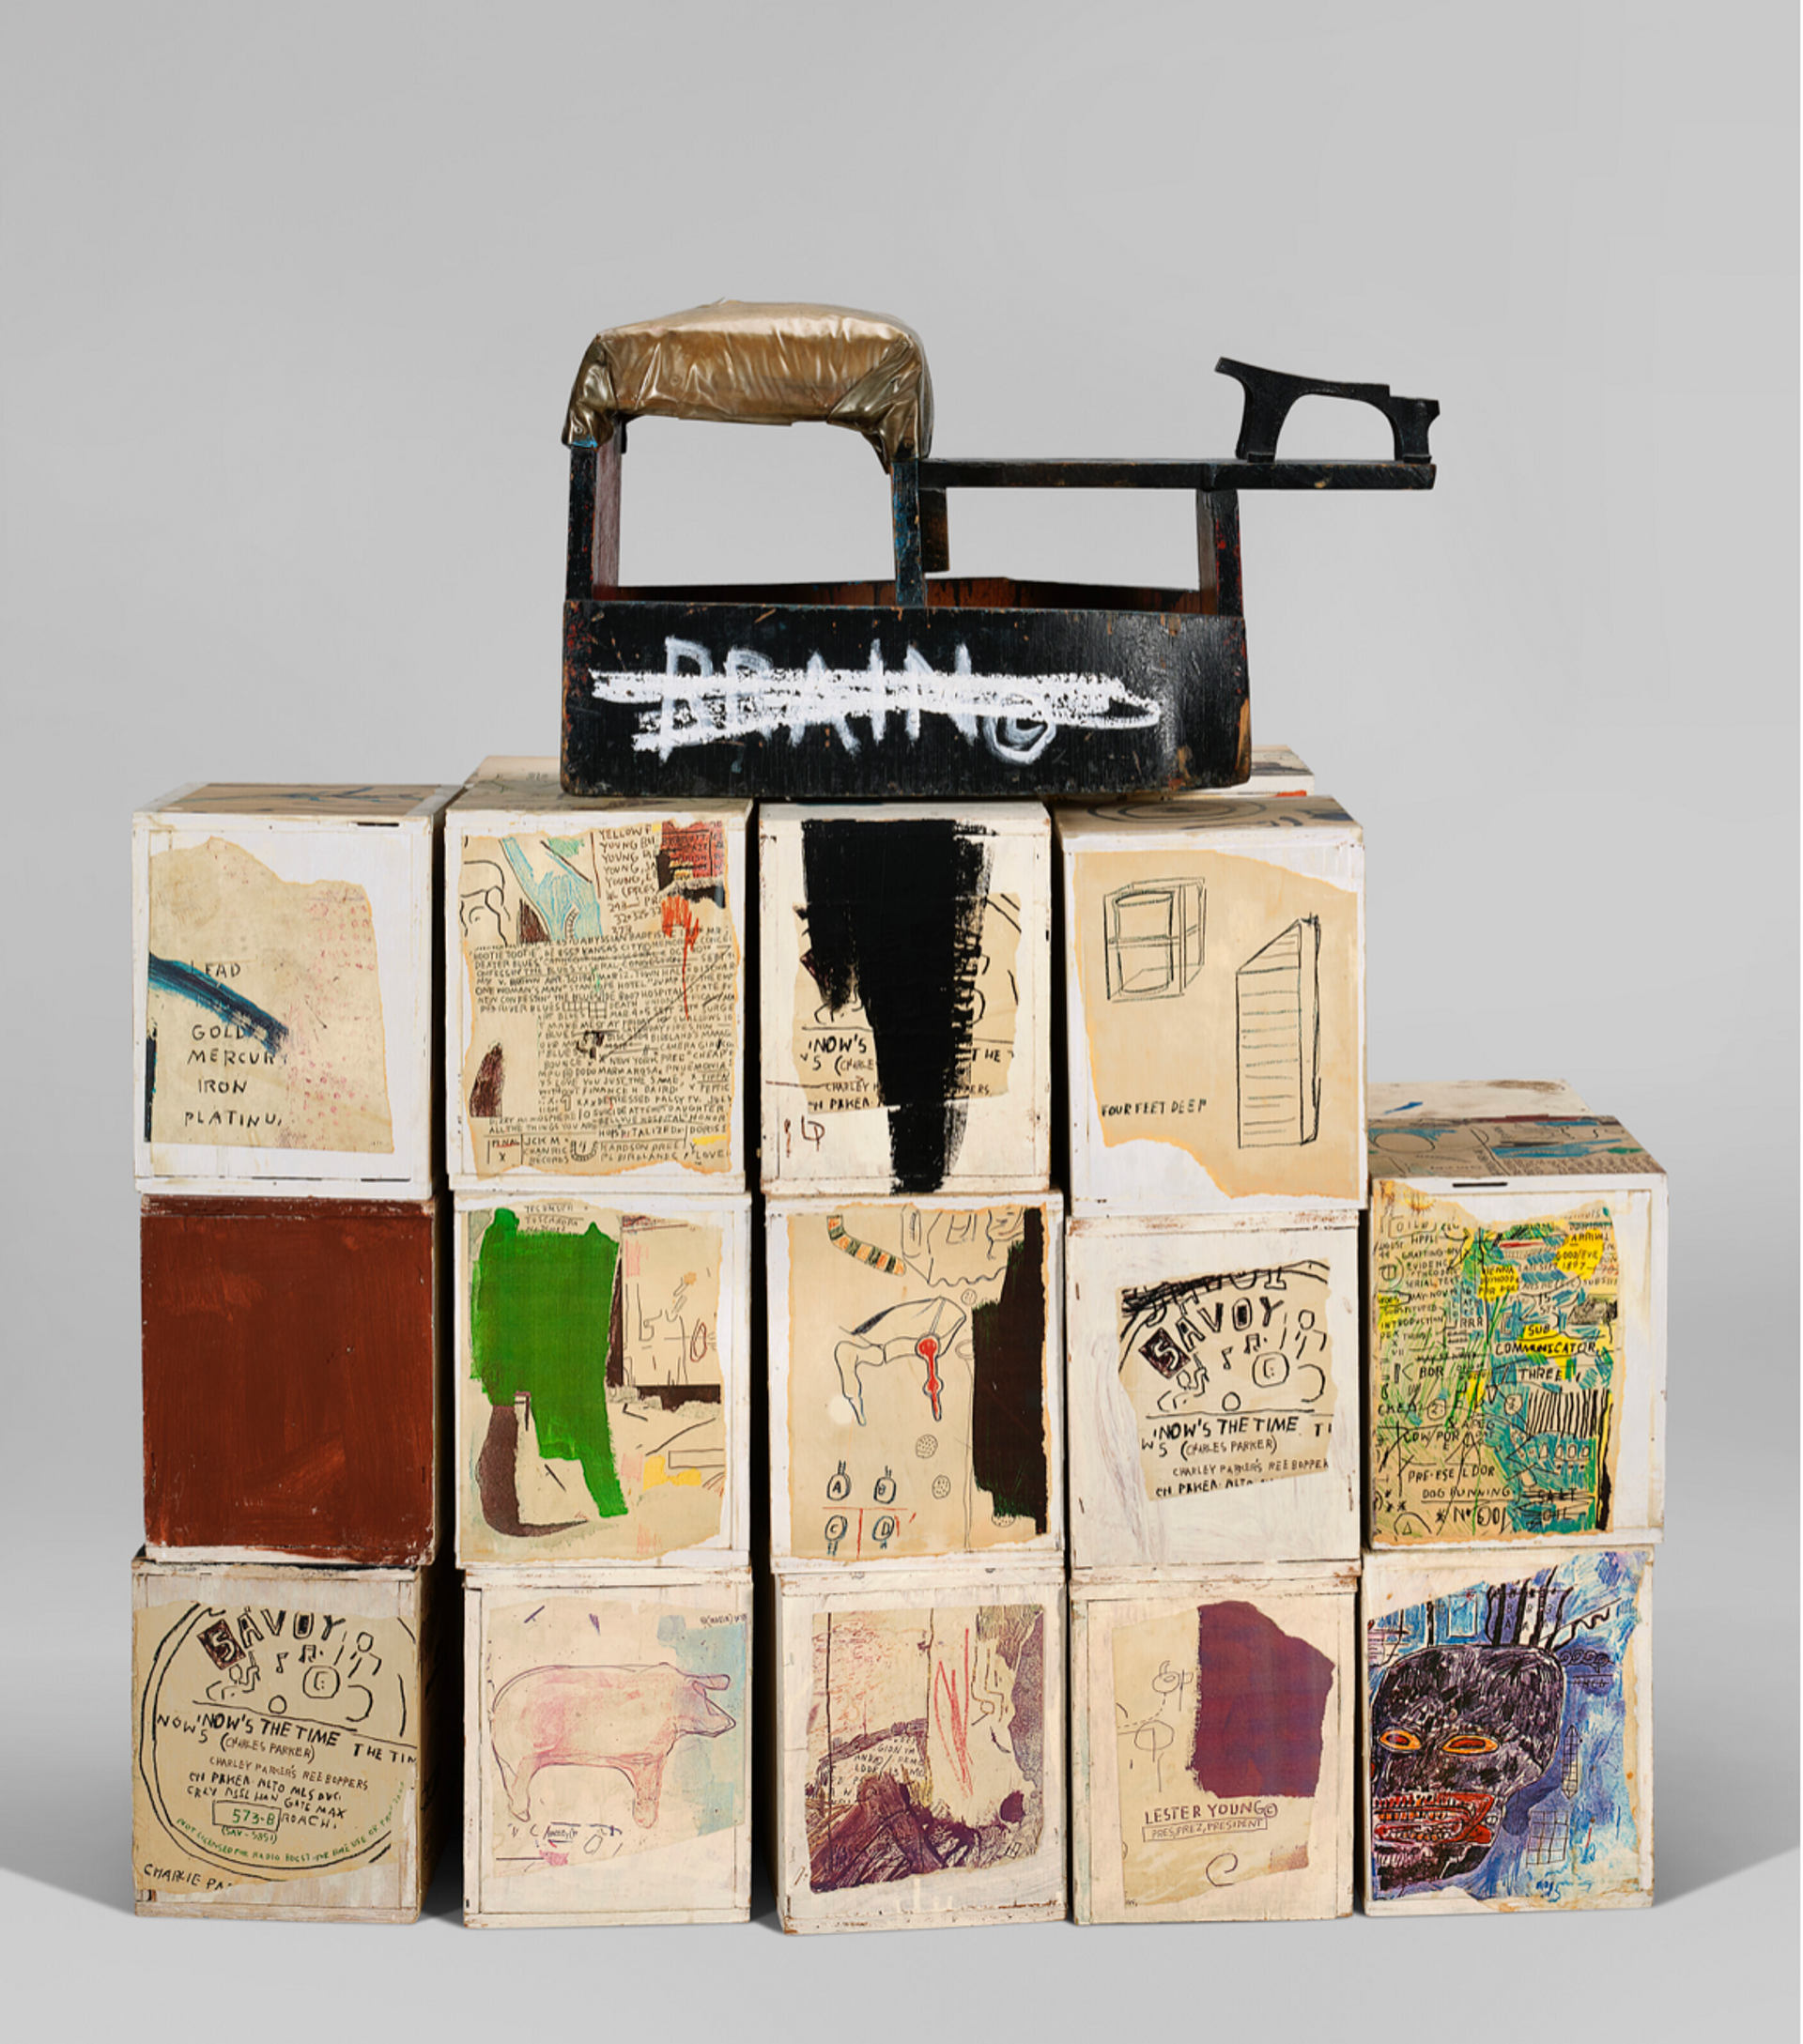 Image © Christie's / Brain © Jean-Michel Basquiat 1985